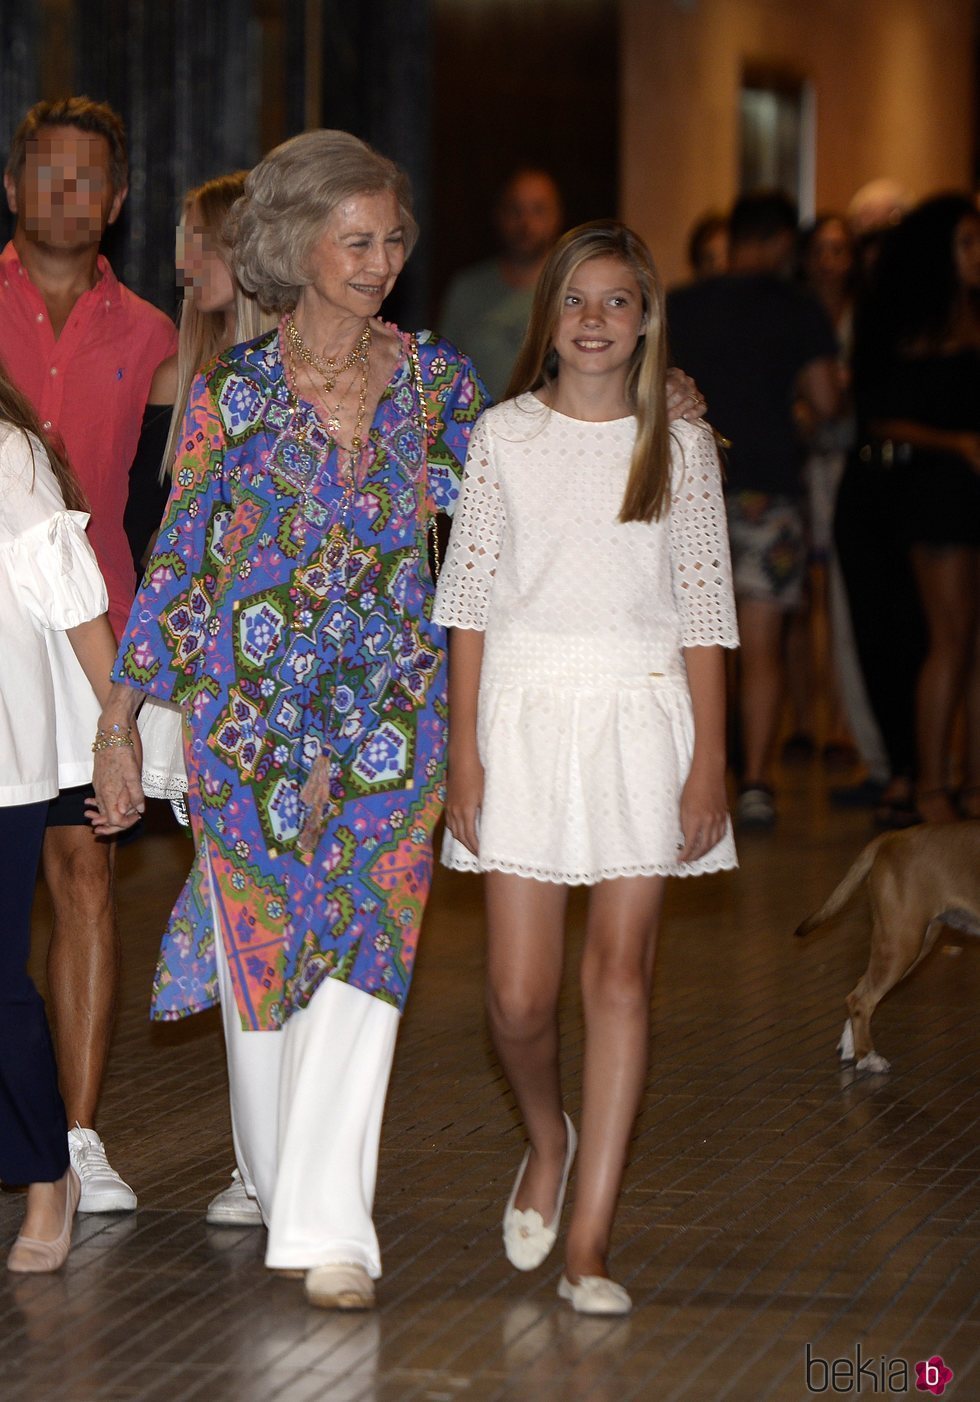 La Reina Sofía y la Infanta Sofía en el ballet en Palma